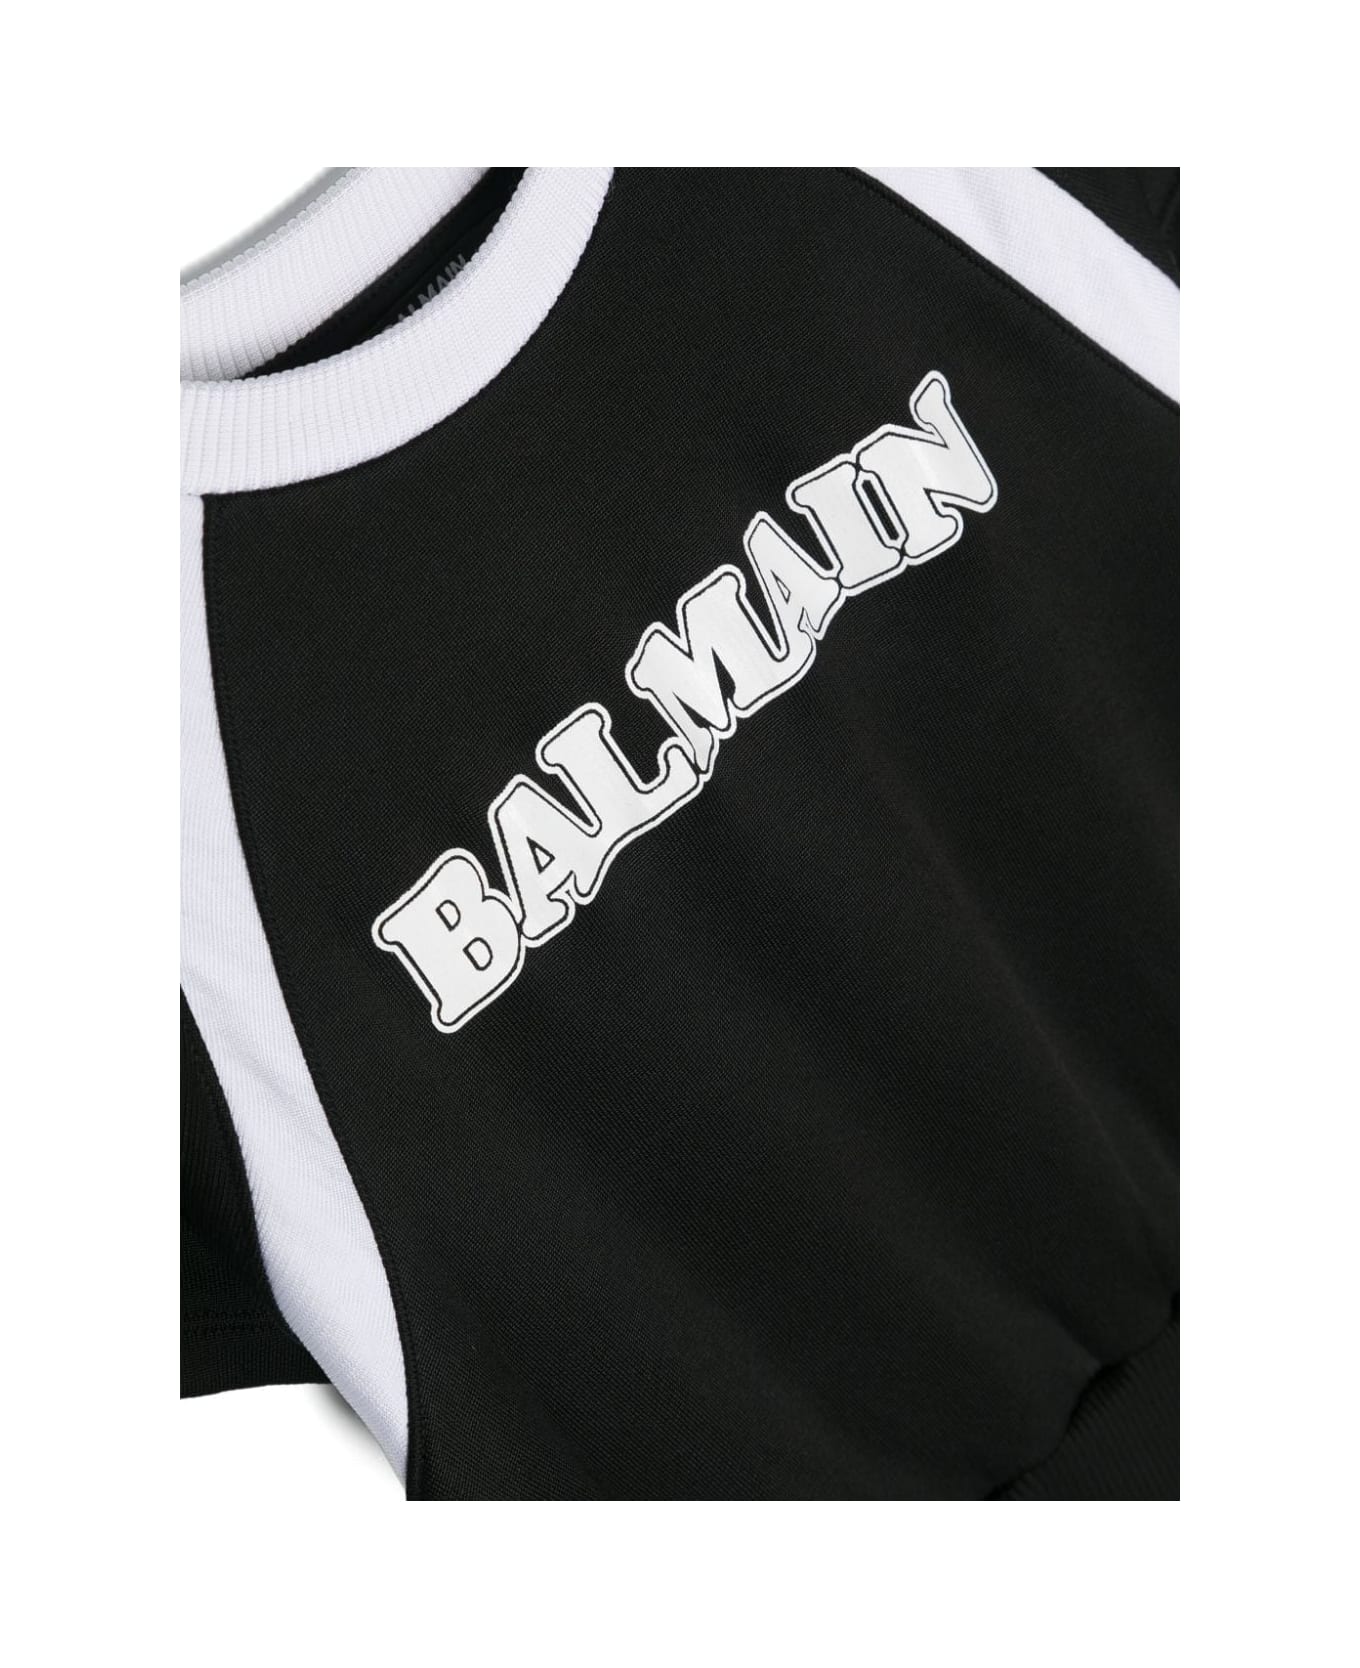 Balmain Abito Con Logo - Black ワンピース＆ドレス